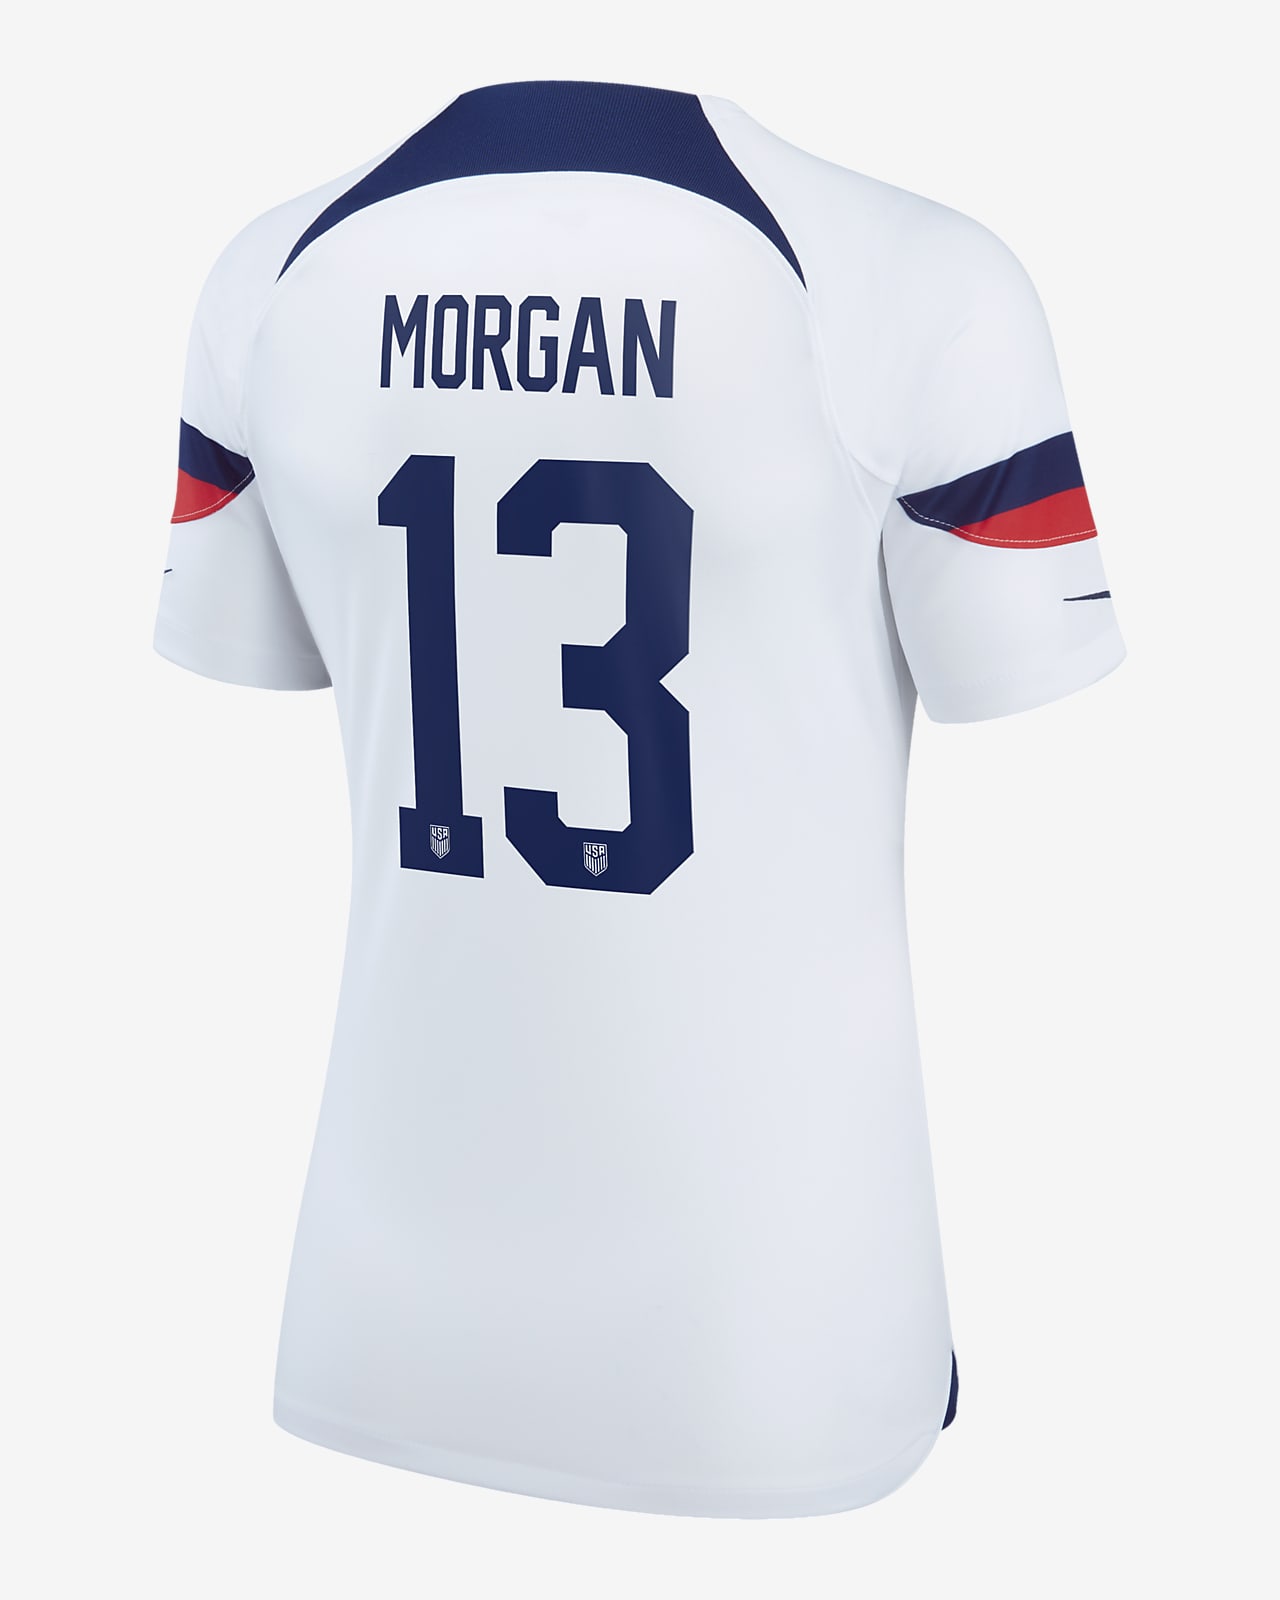 Camiseta Morgan Mujer